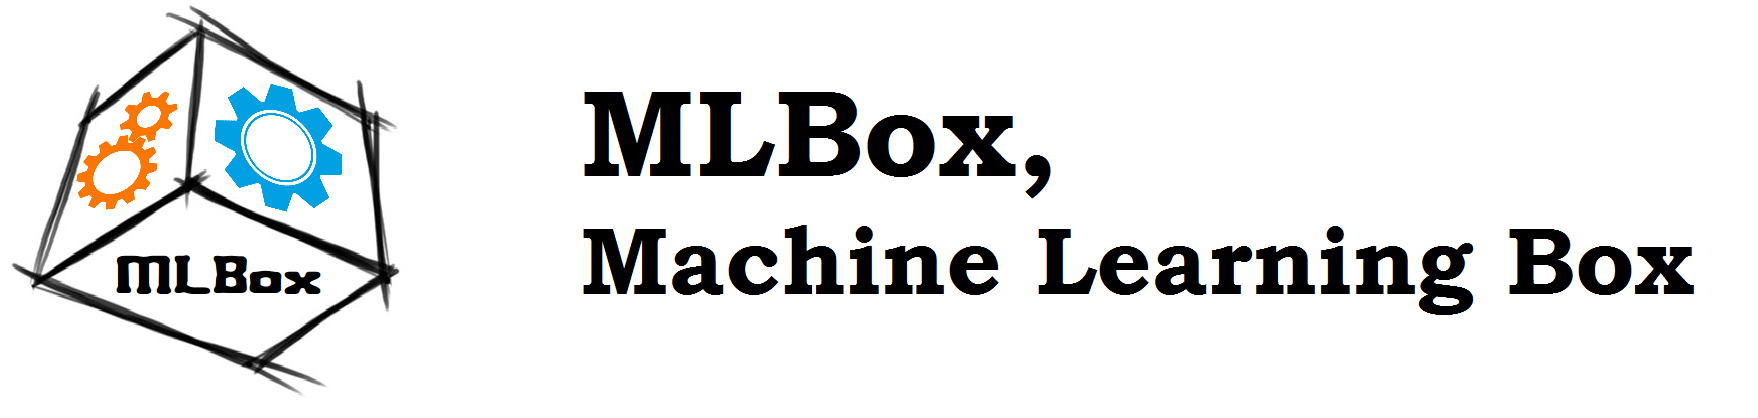 ML box autoML